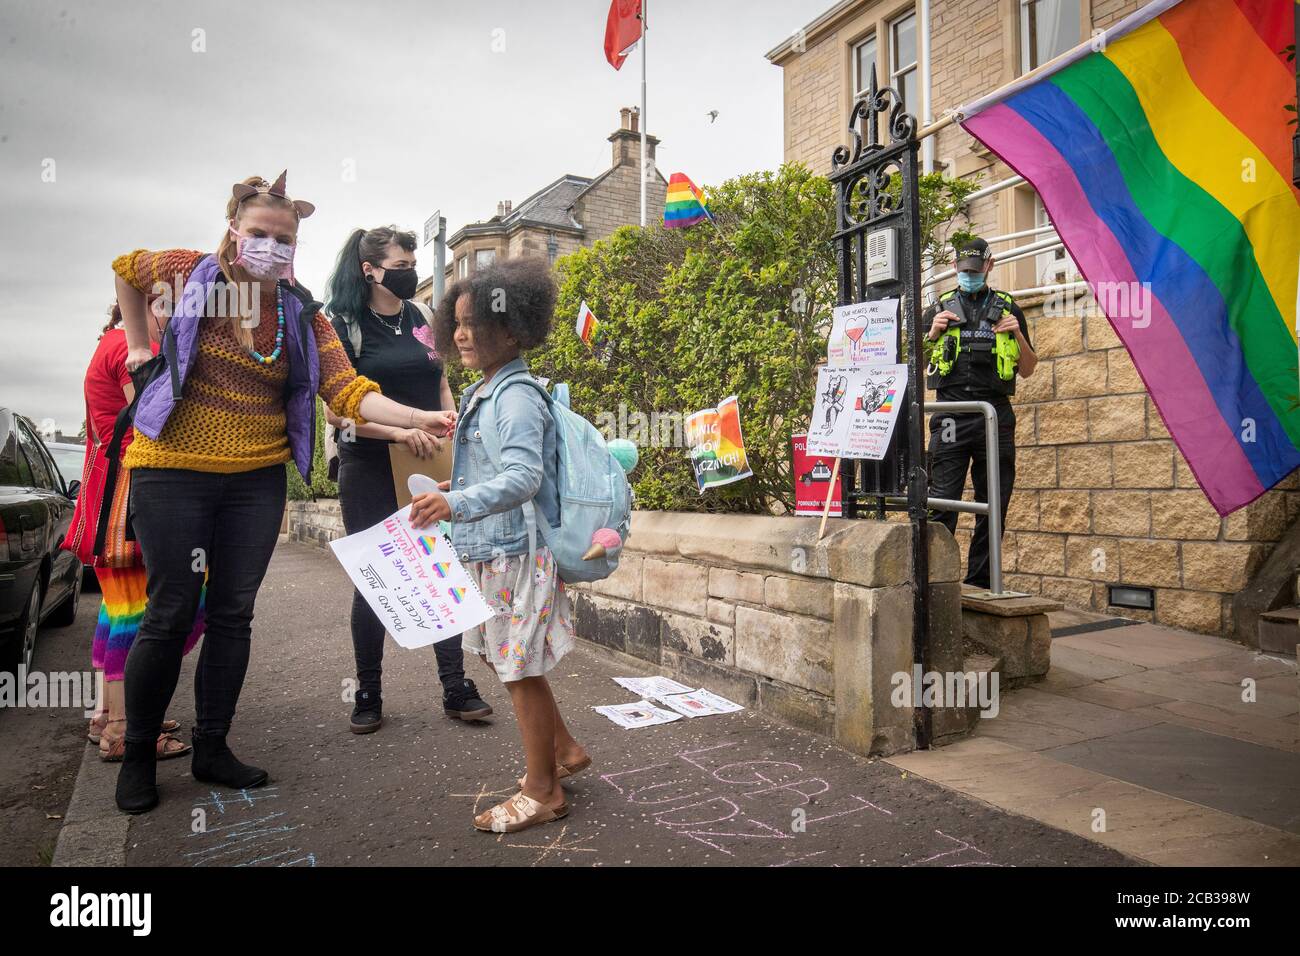 Mitglieder der LGBT-Gemeinschaft protestieren vor dem polnischen Konsulat in Edinburgh, um gegen den neu gewählten Präsidenten Polens, Andrzej Duda, zu demonstrieren, dem vorgeworfen wird, eine Kampagne mit homophober Rhetorik geführt zu haben. Stockfoto